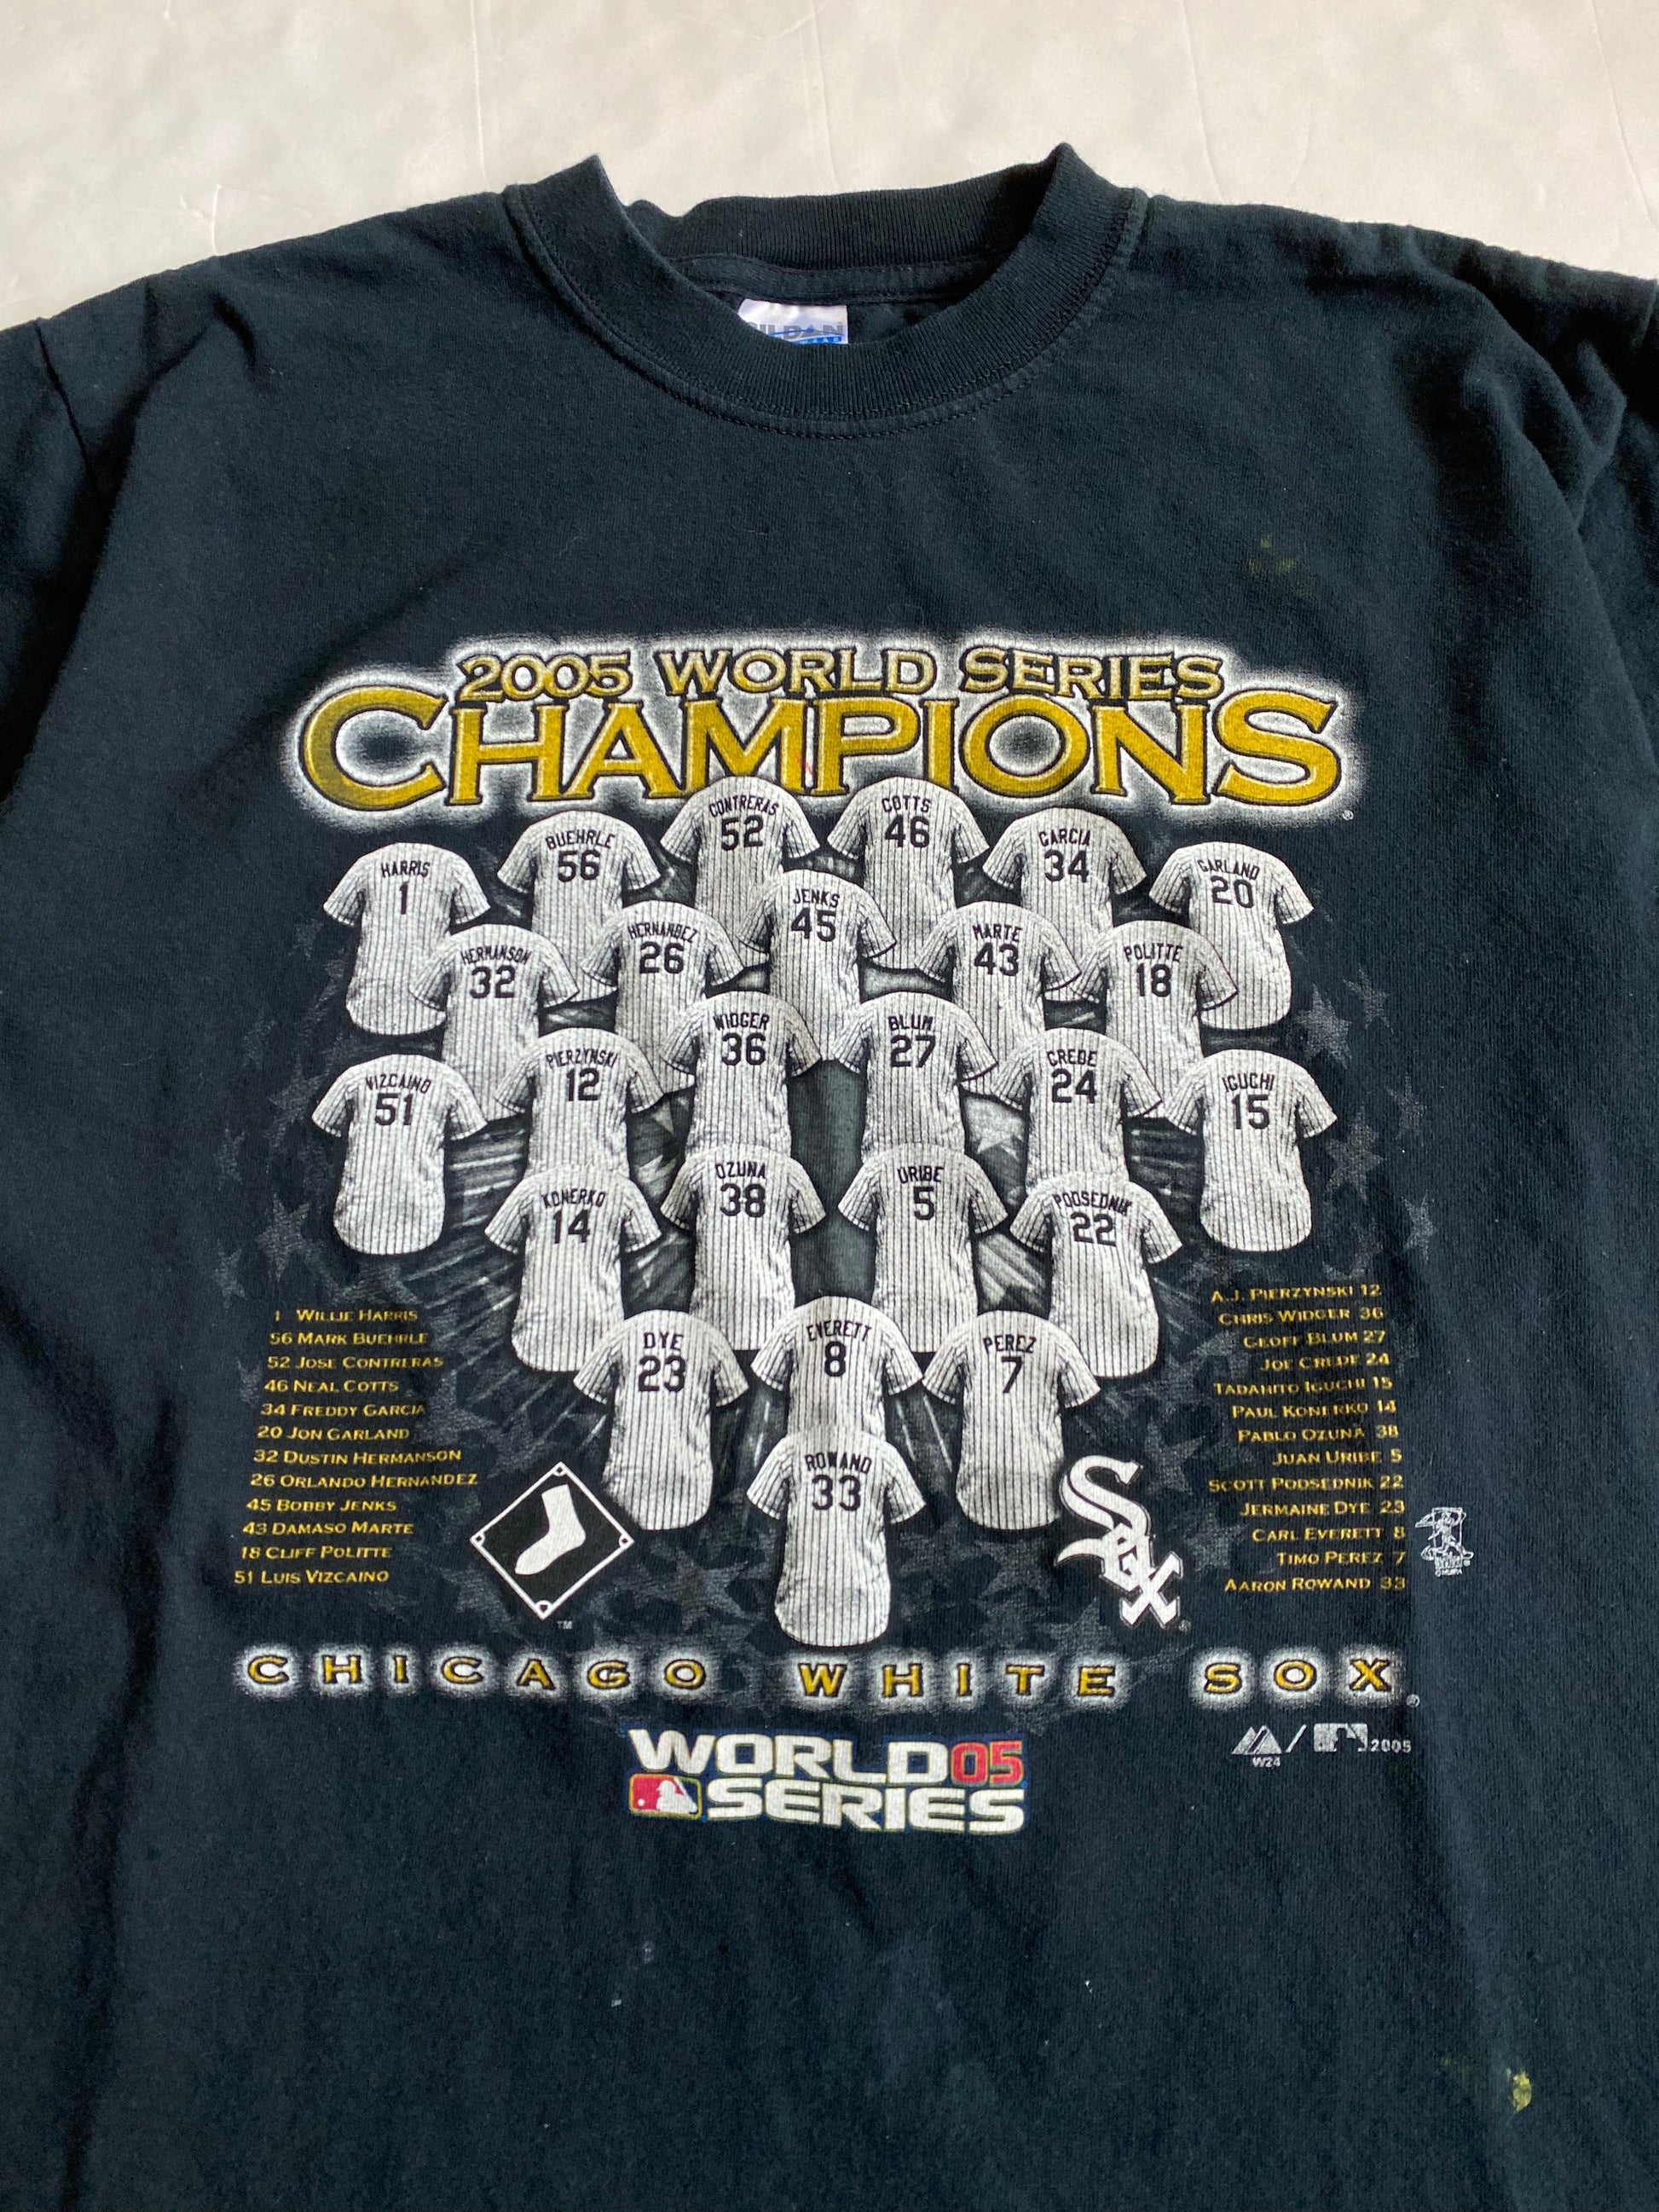 Chicago White Sox 2005 World Series Champions shirt, hoodie